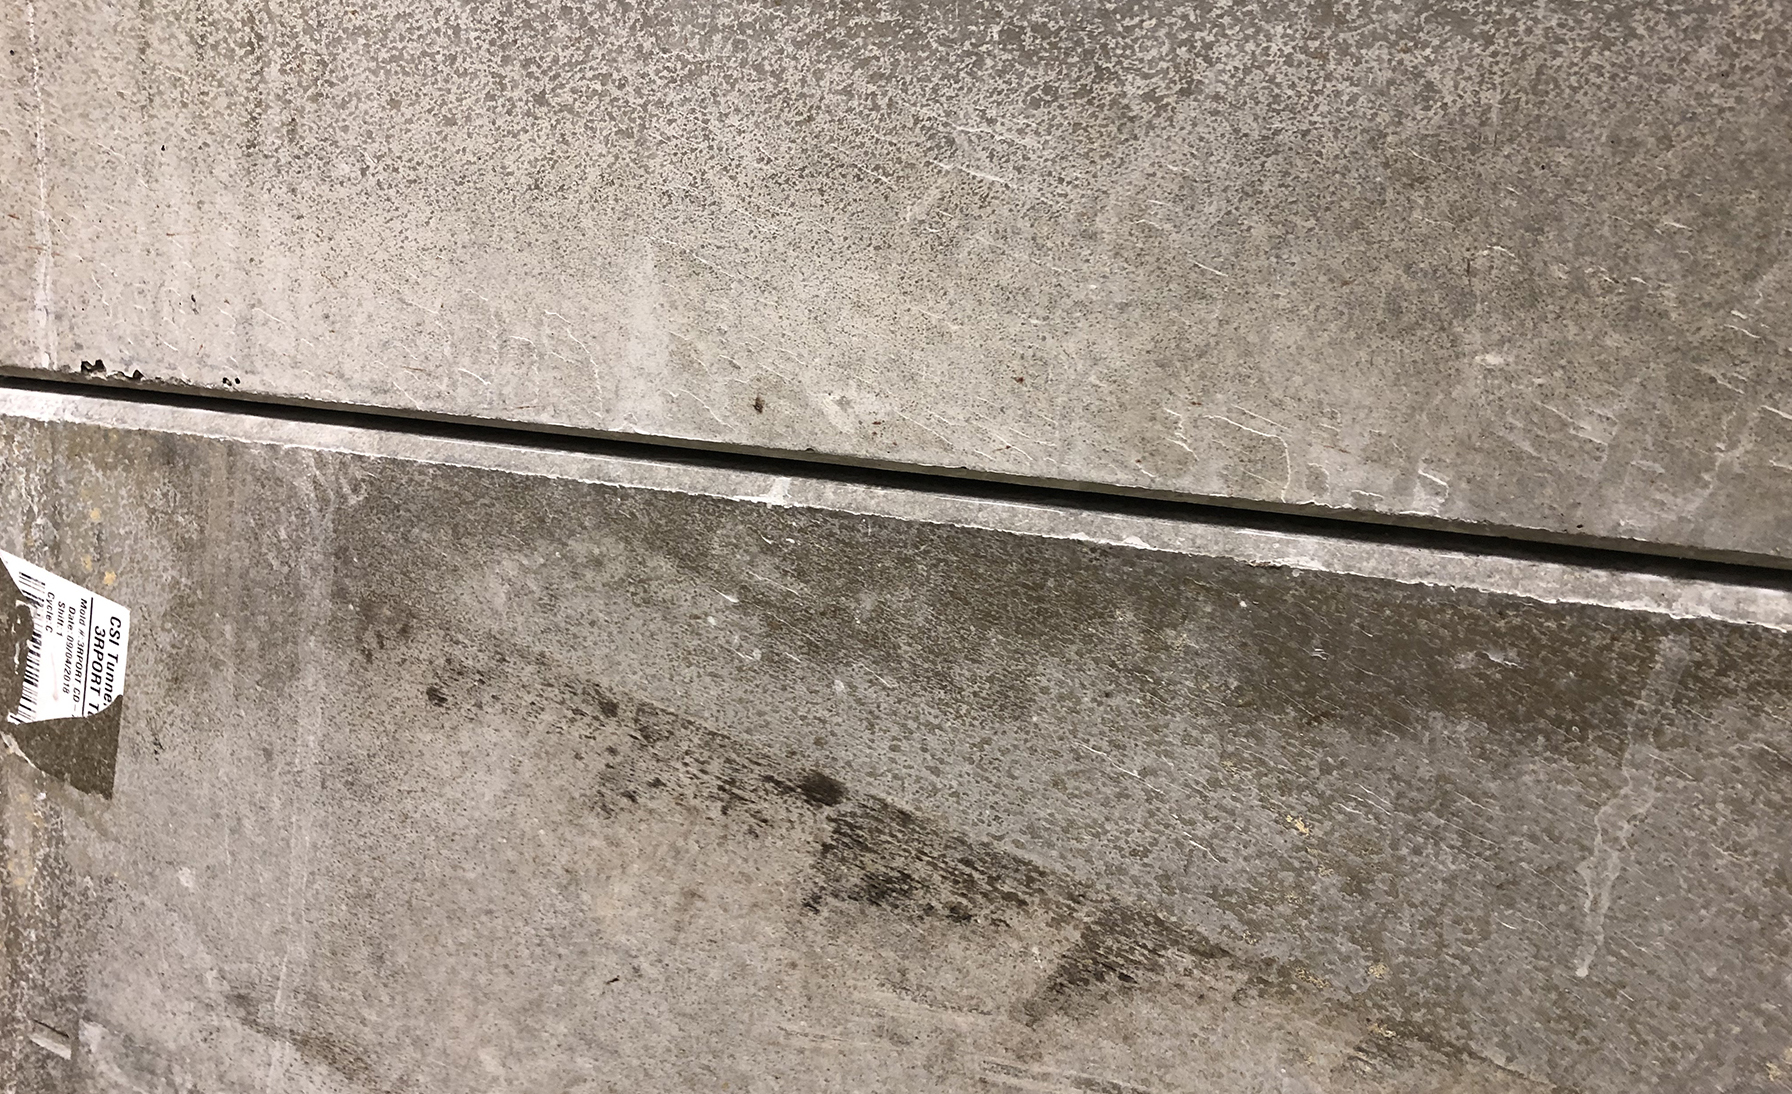 CU of concrete liner connection rev